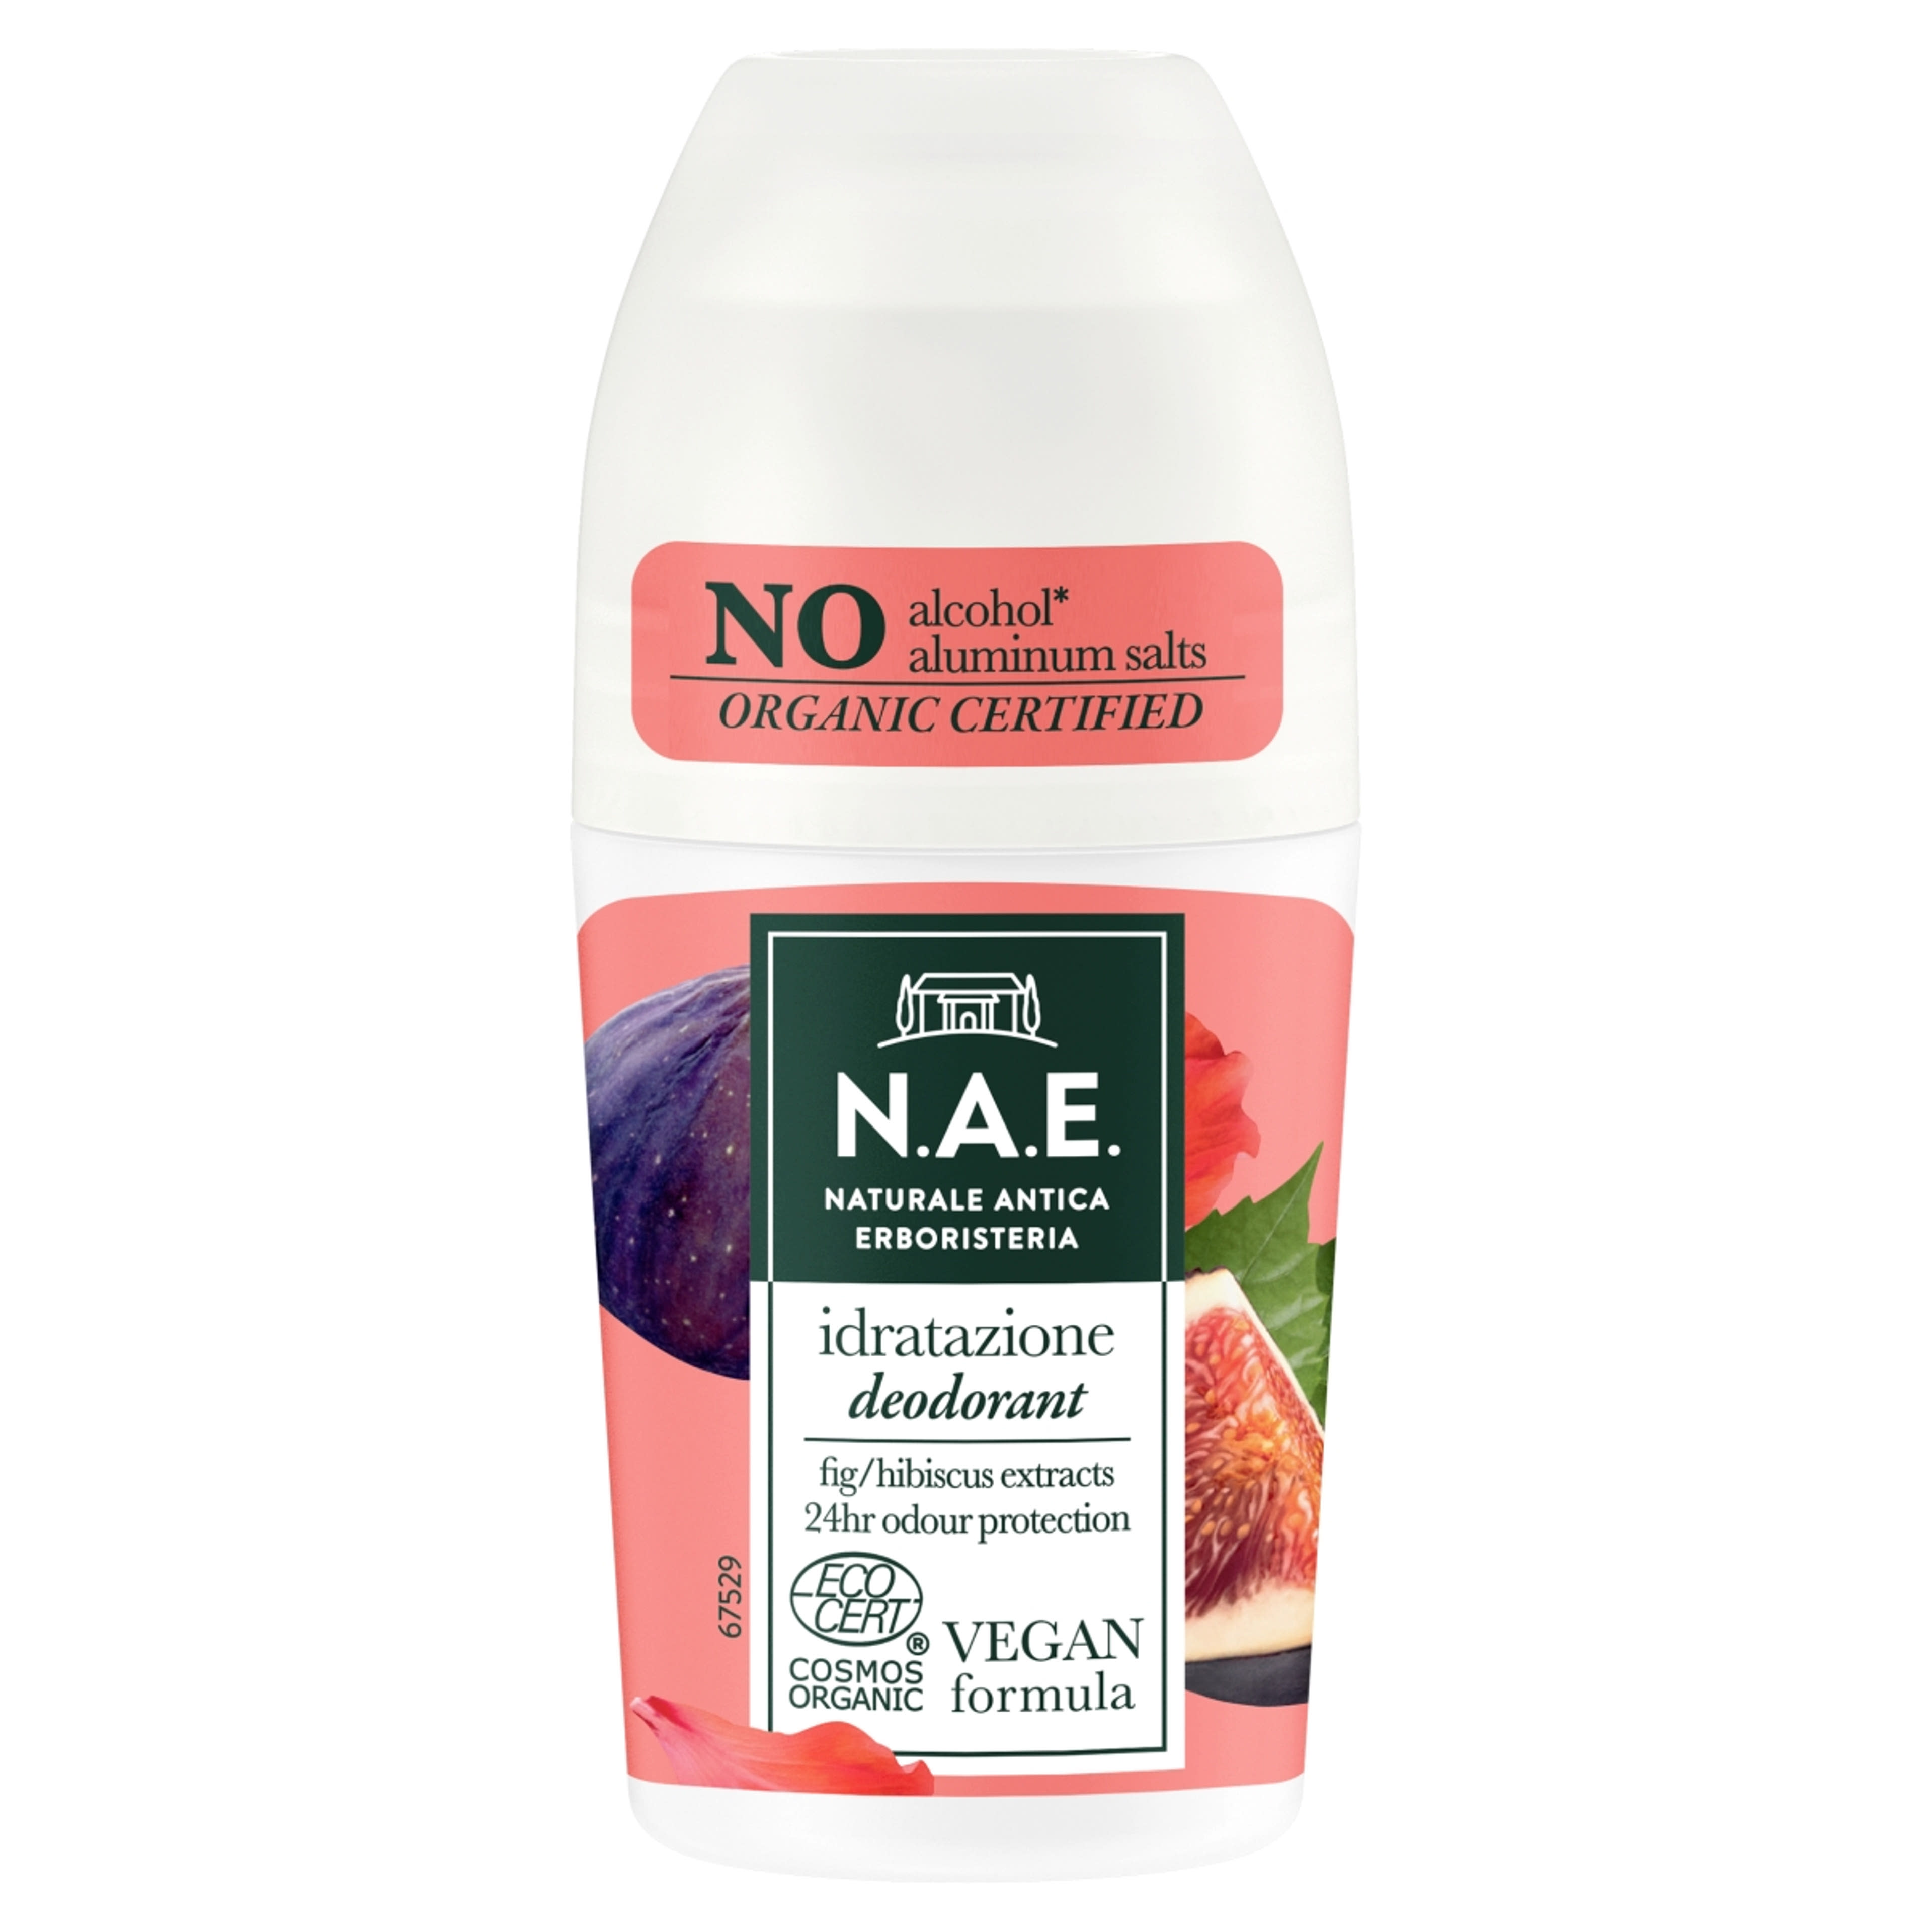 N.A.E. roll-on bio frissítő idratazione - 50 ml-1